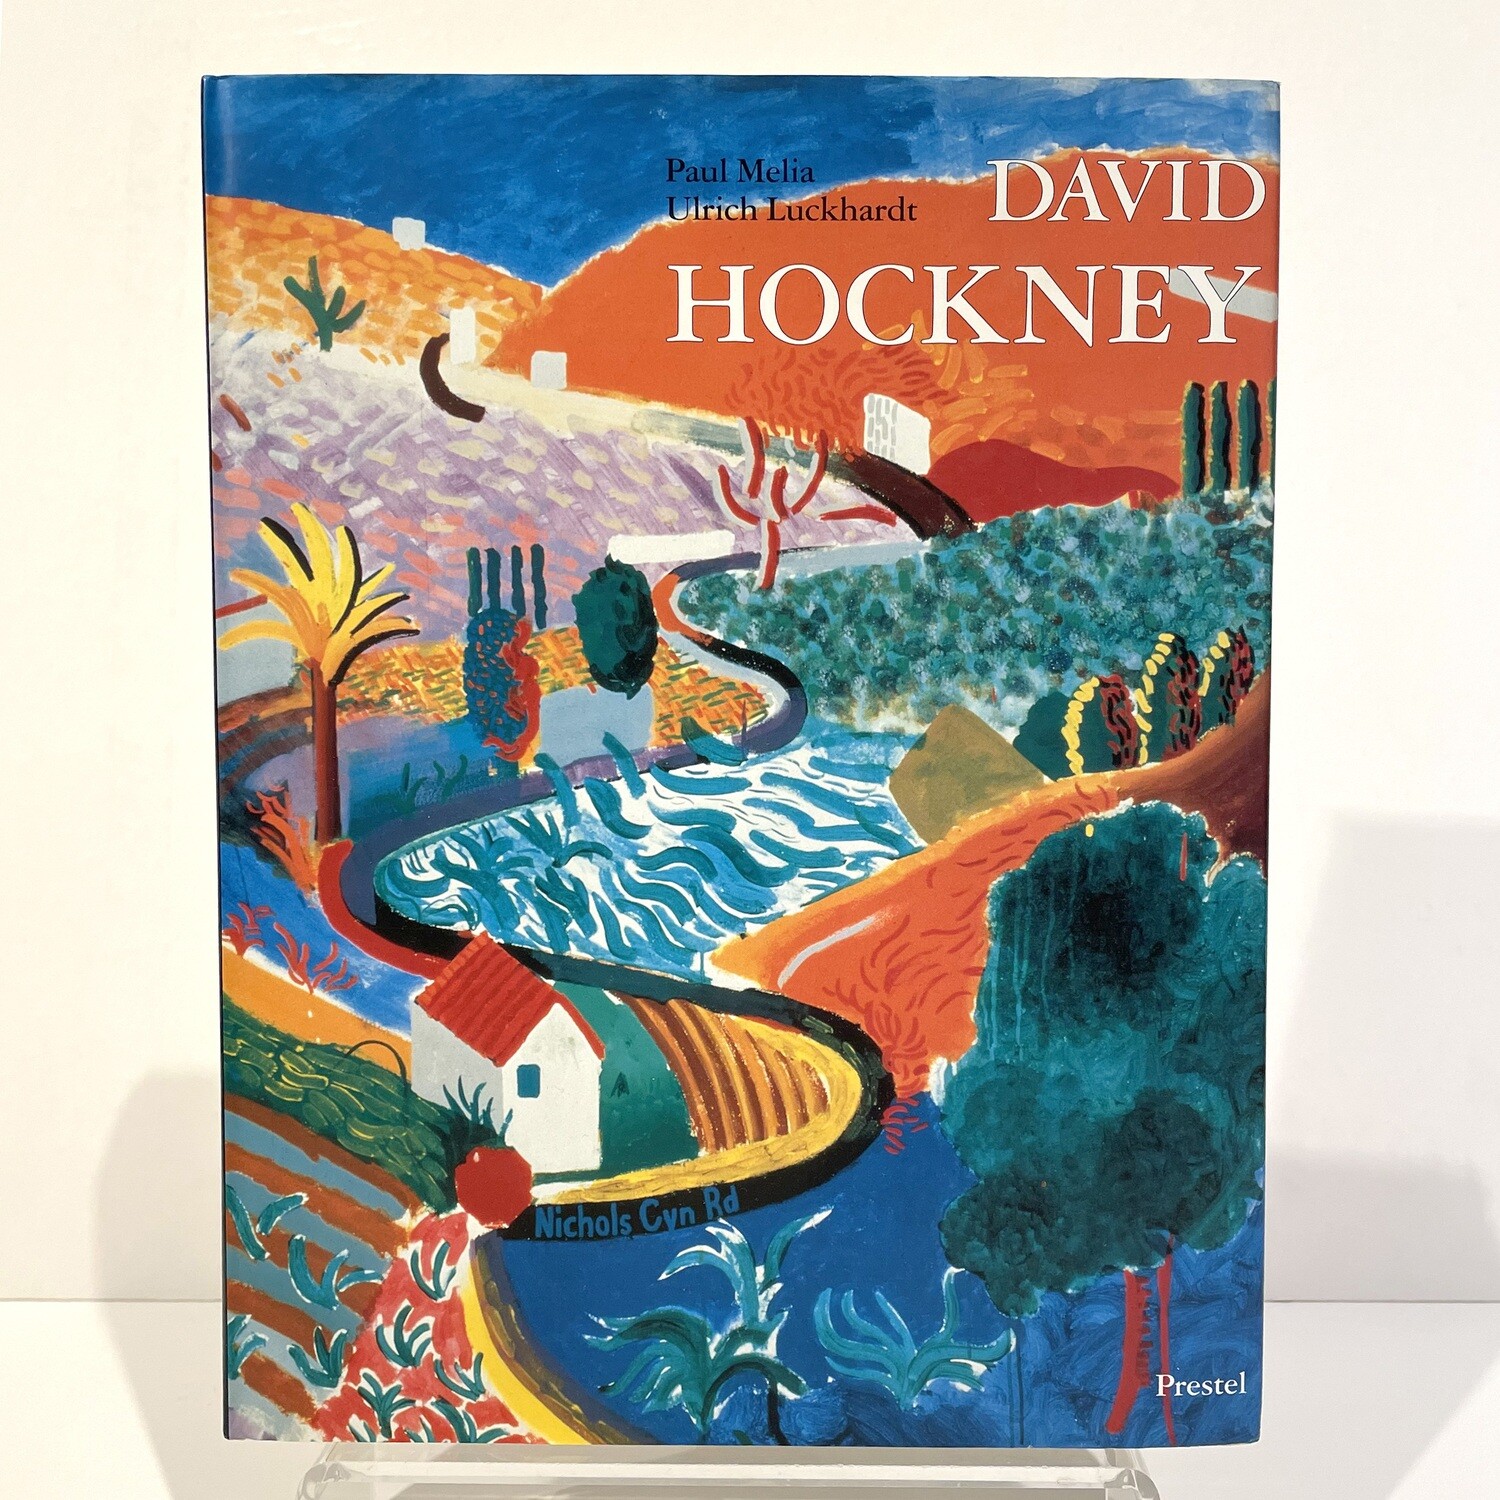 Boek | David Hockney, Paul Malia & Ulrich Luckhardt, 2000